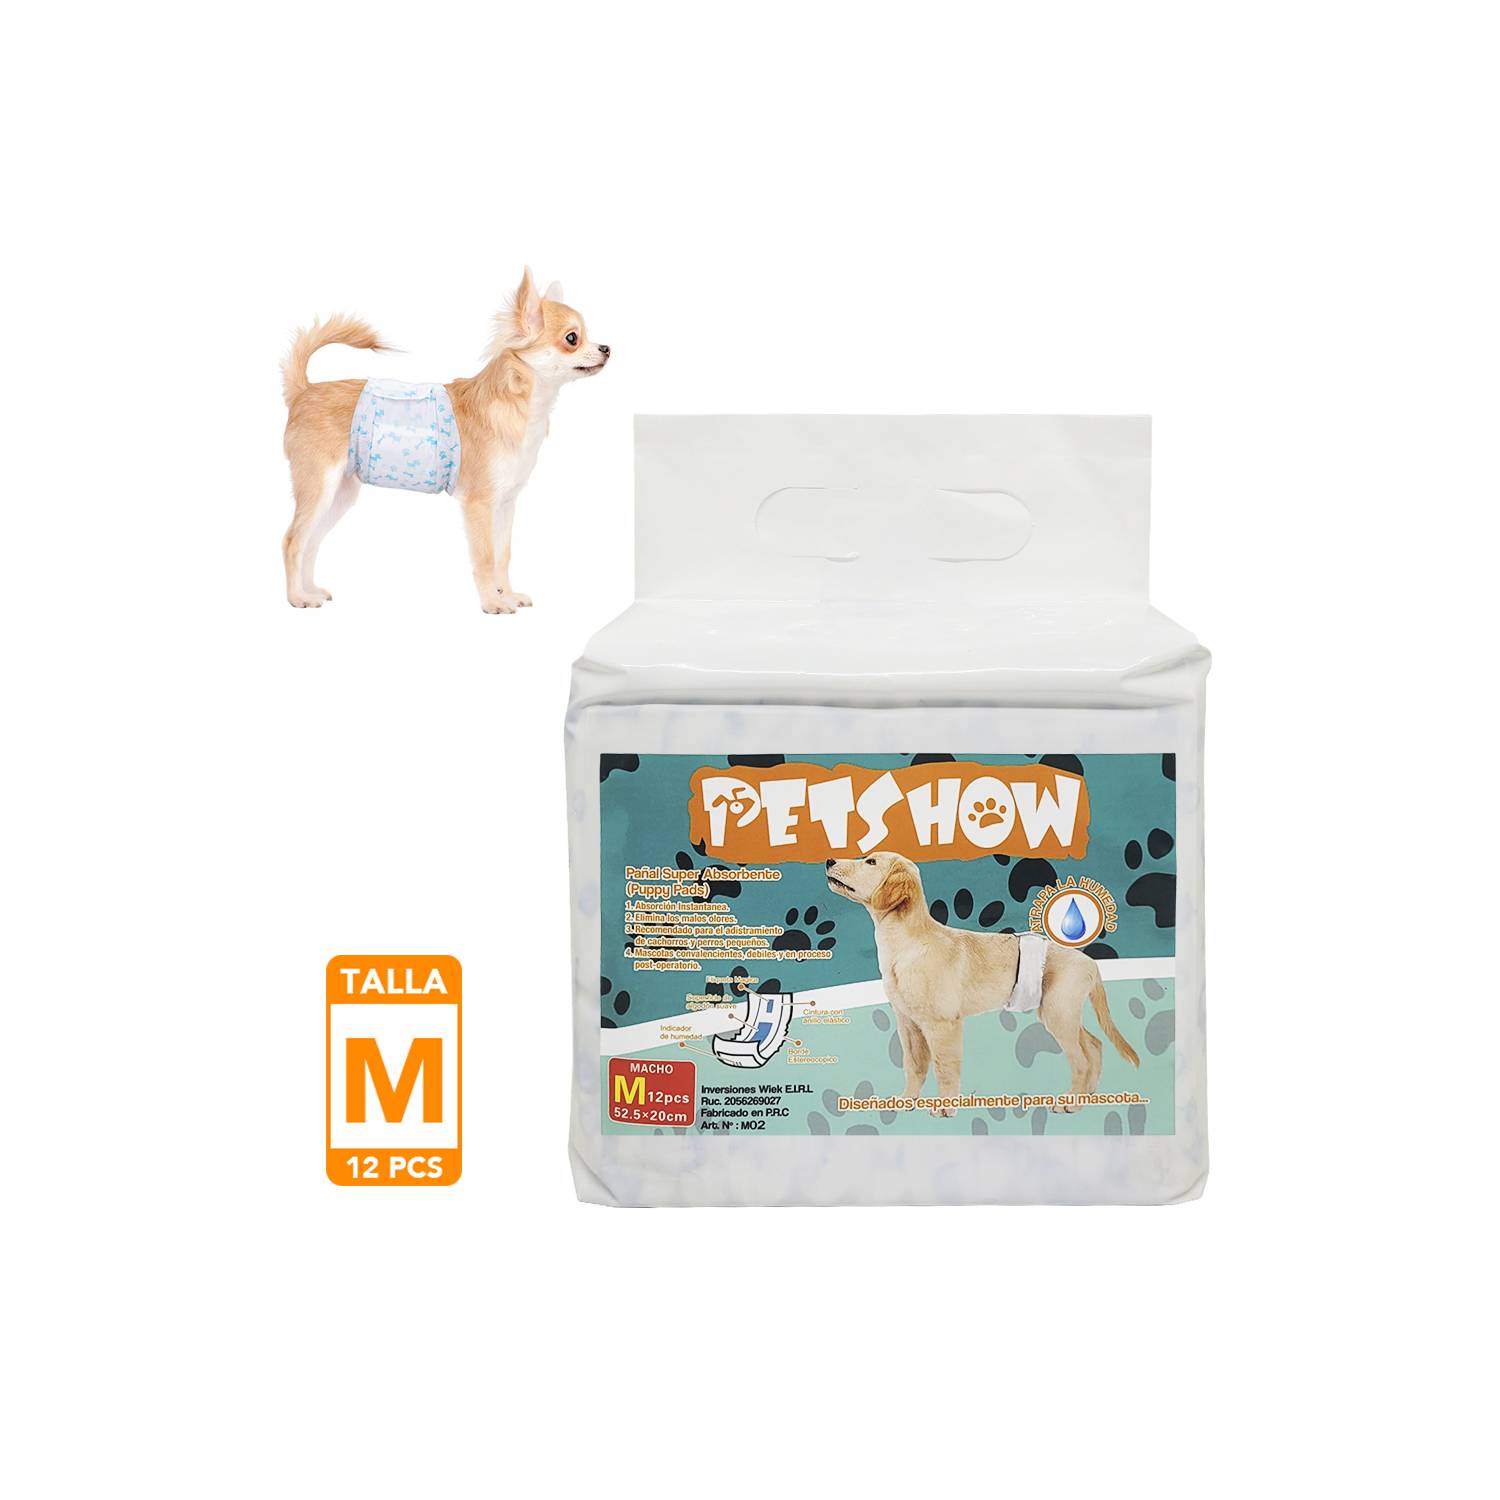  Pañales Pet Soft para perro, desechables, para perros macho, s  : Productos para Animales